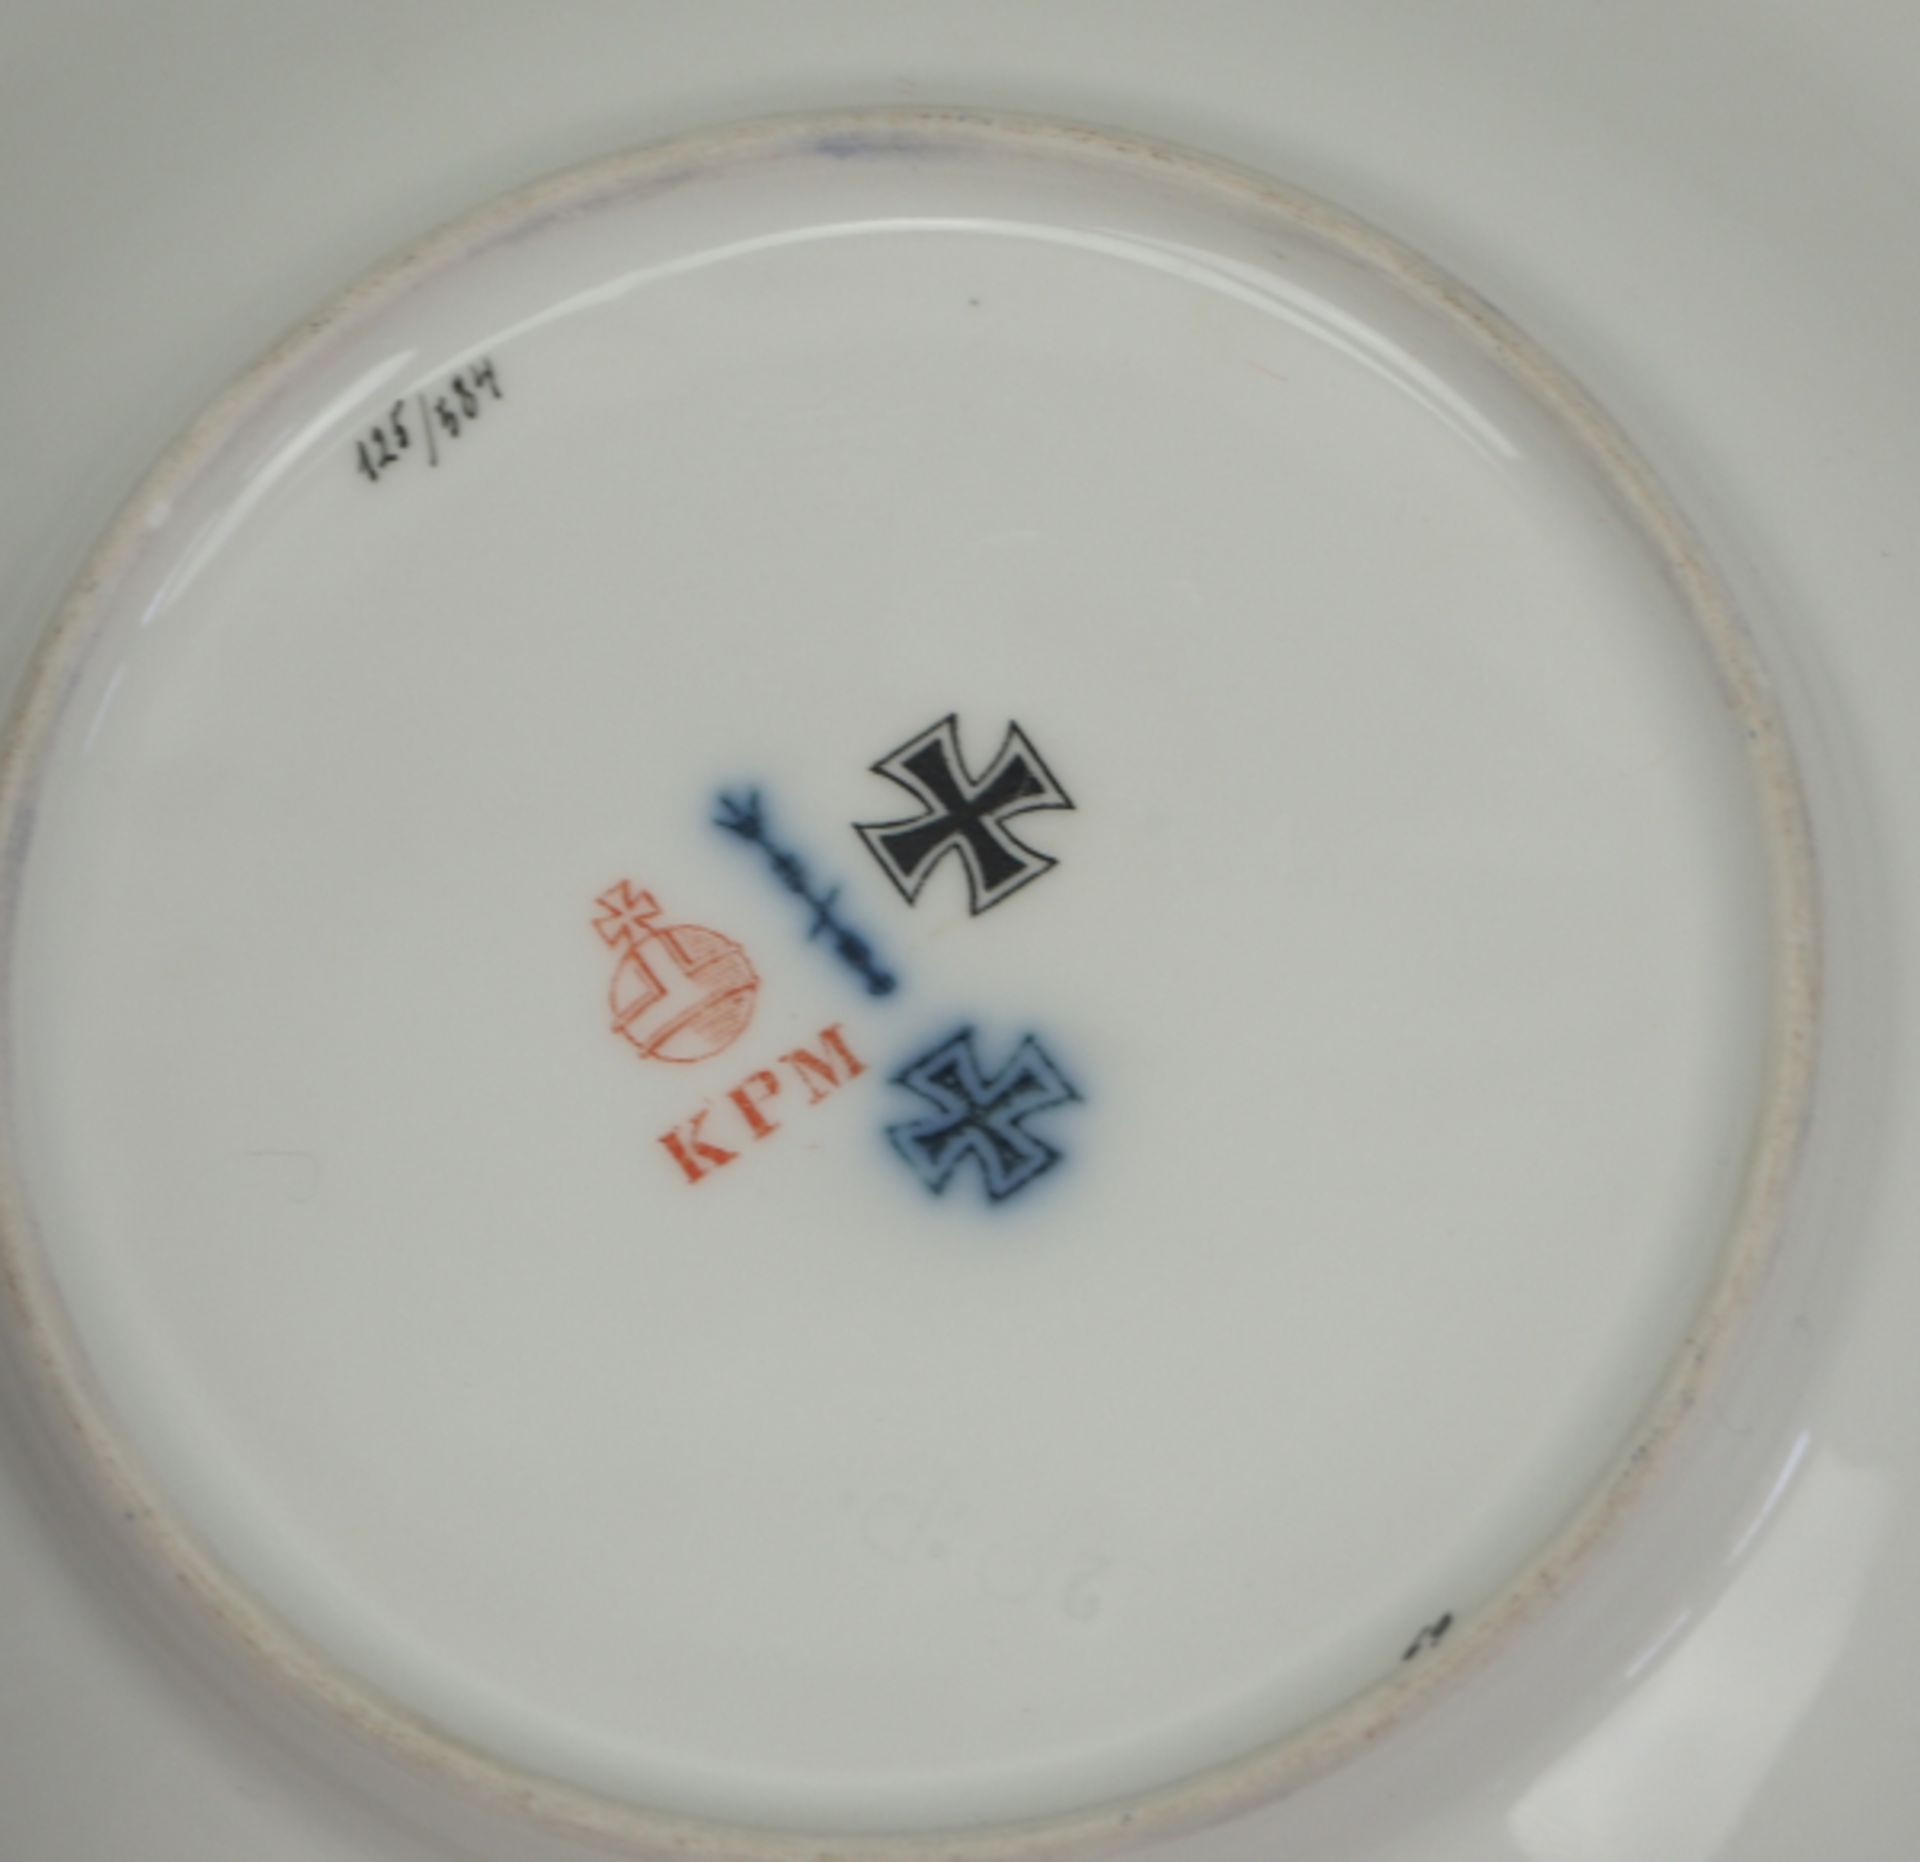 KPM EK-Tasse mit Unterteller.Weißes Porzellan, mit goldenem Rand und Fuß, die Außenwandung blau, mit - Bild 3 aus 4